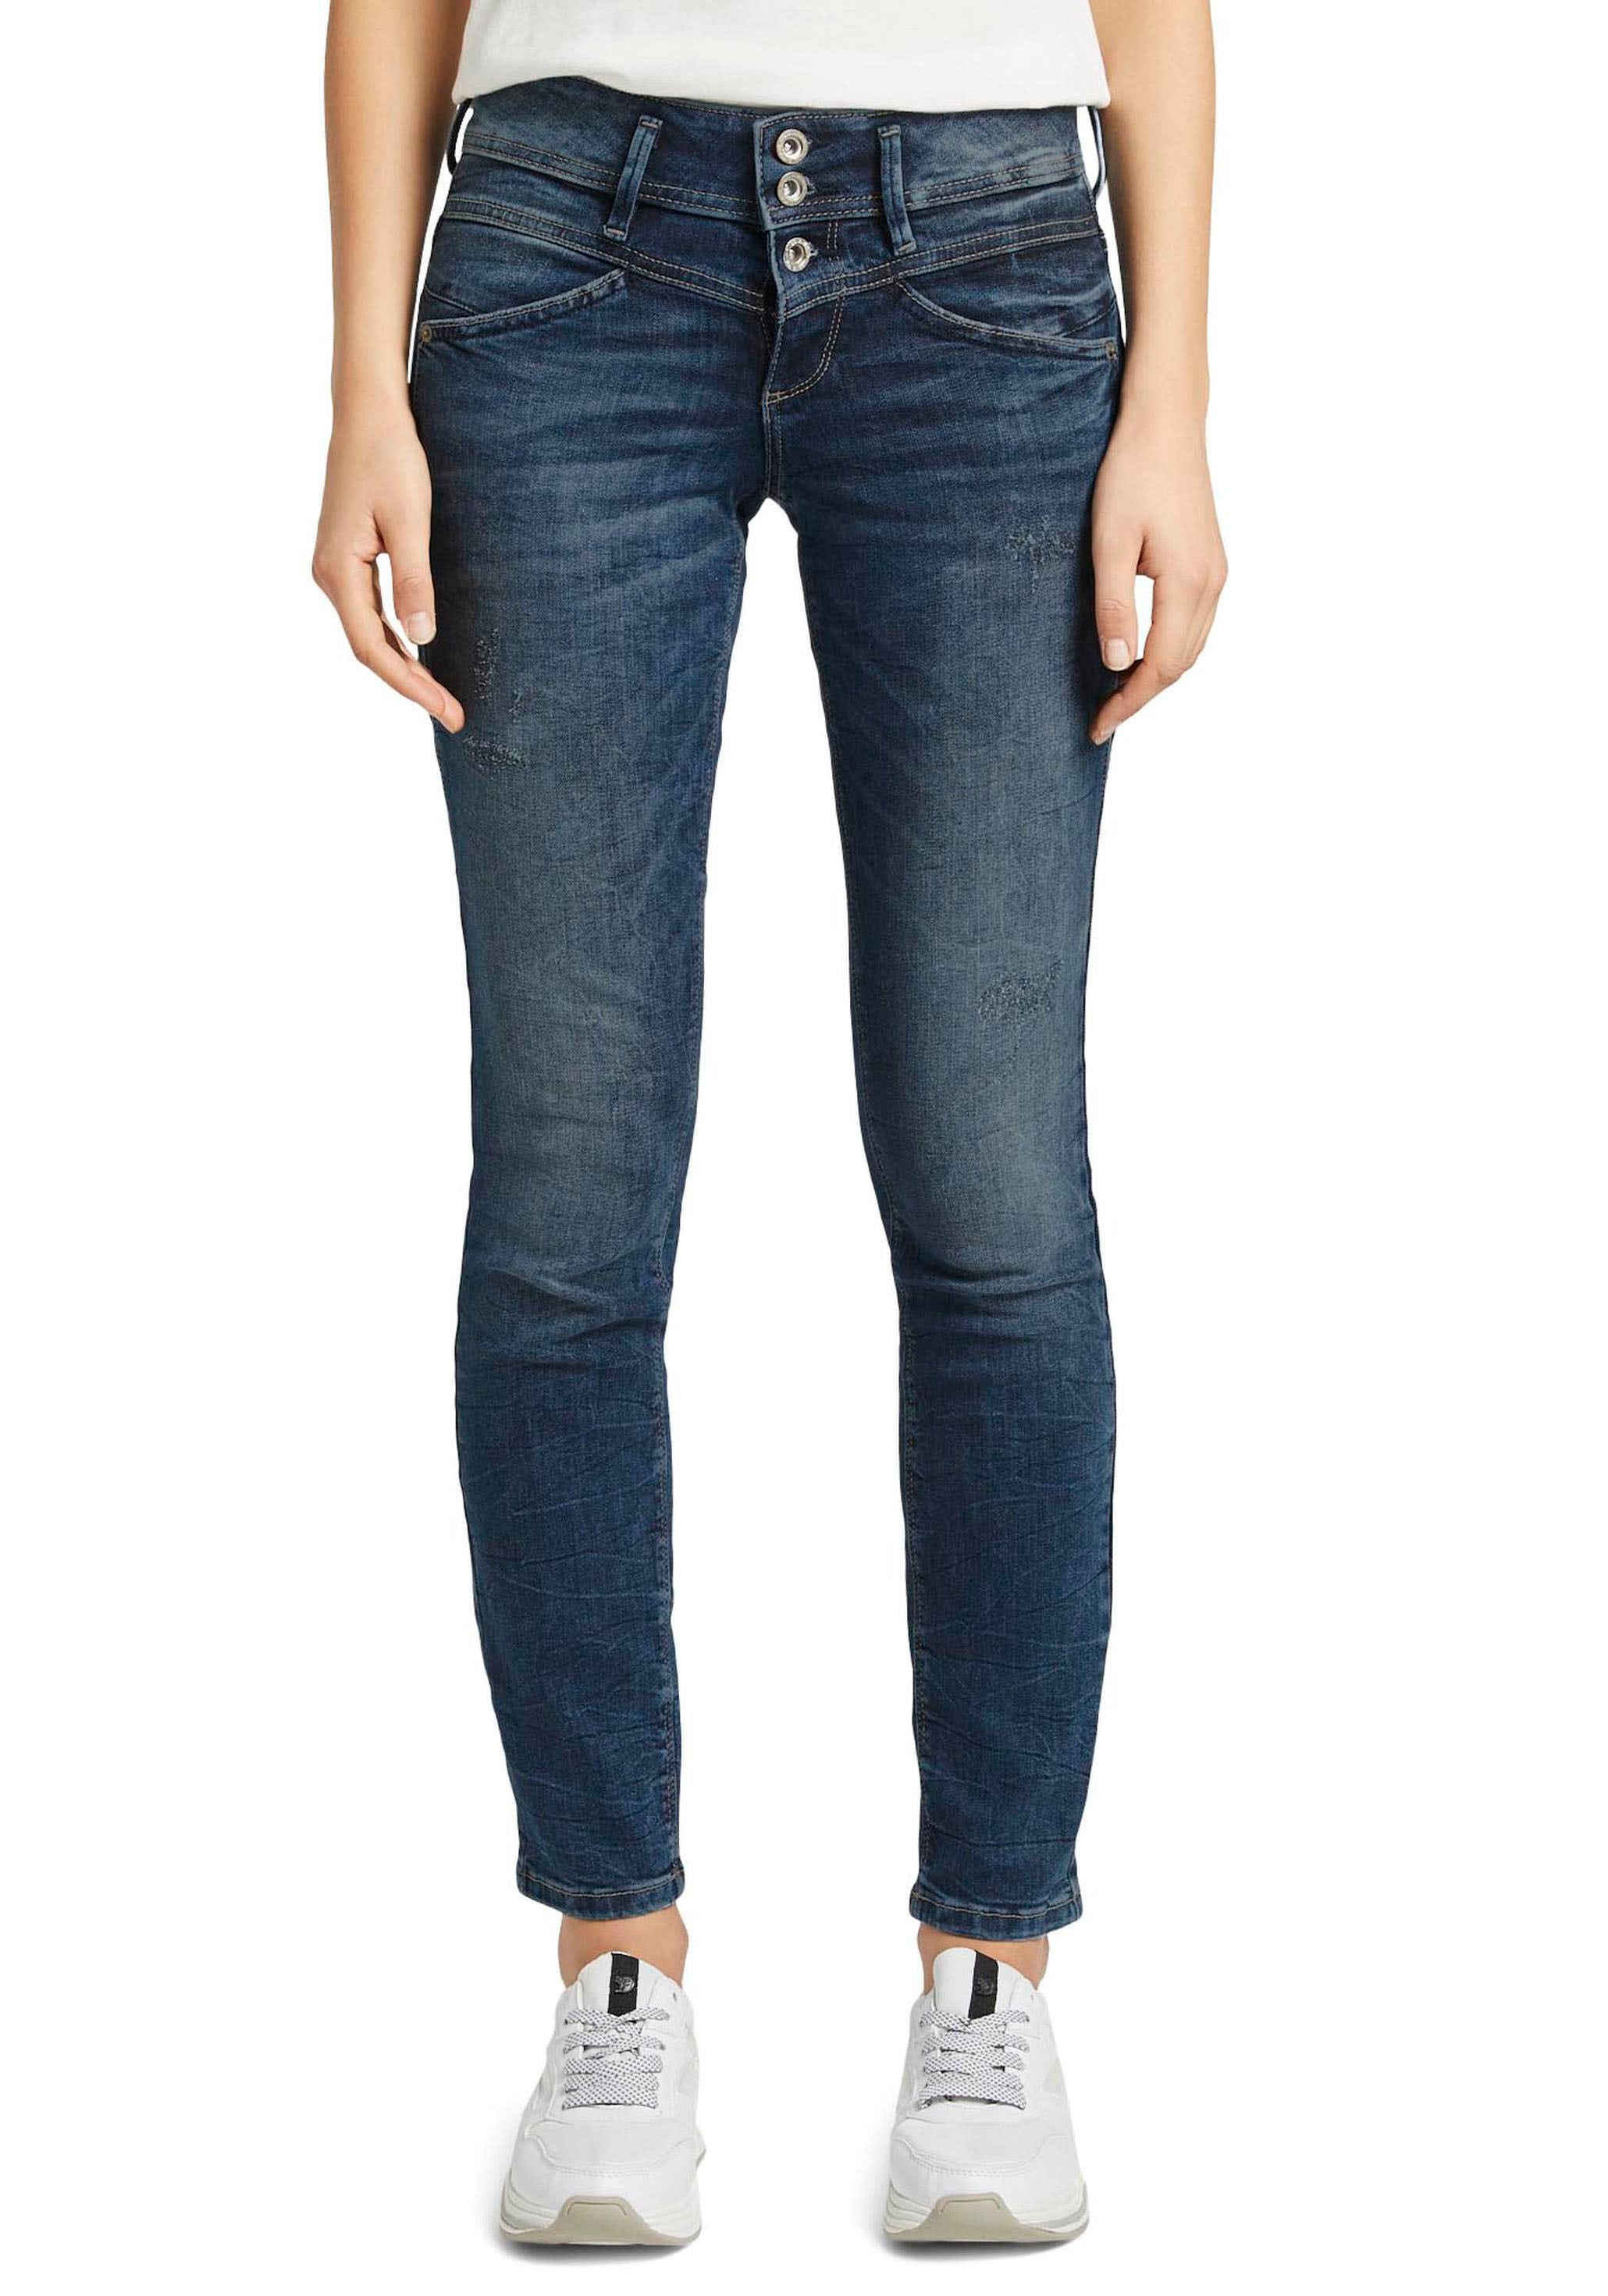 Damen Jeans große online Größen kaufen jetzt